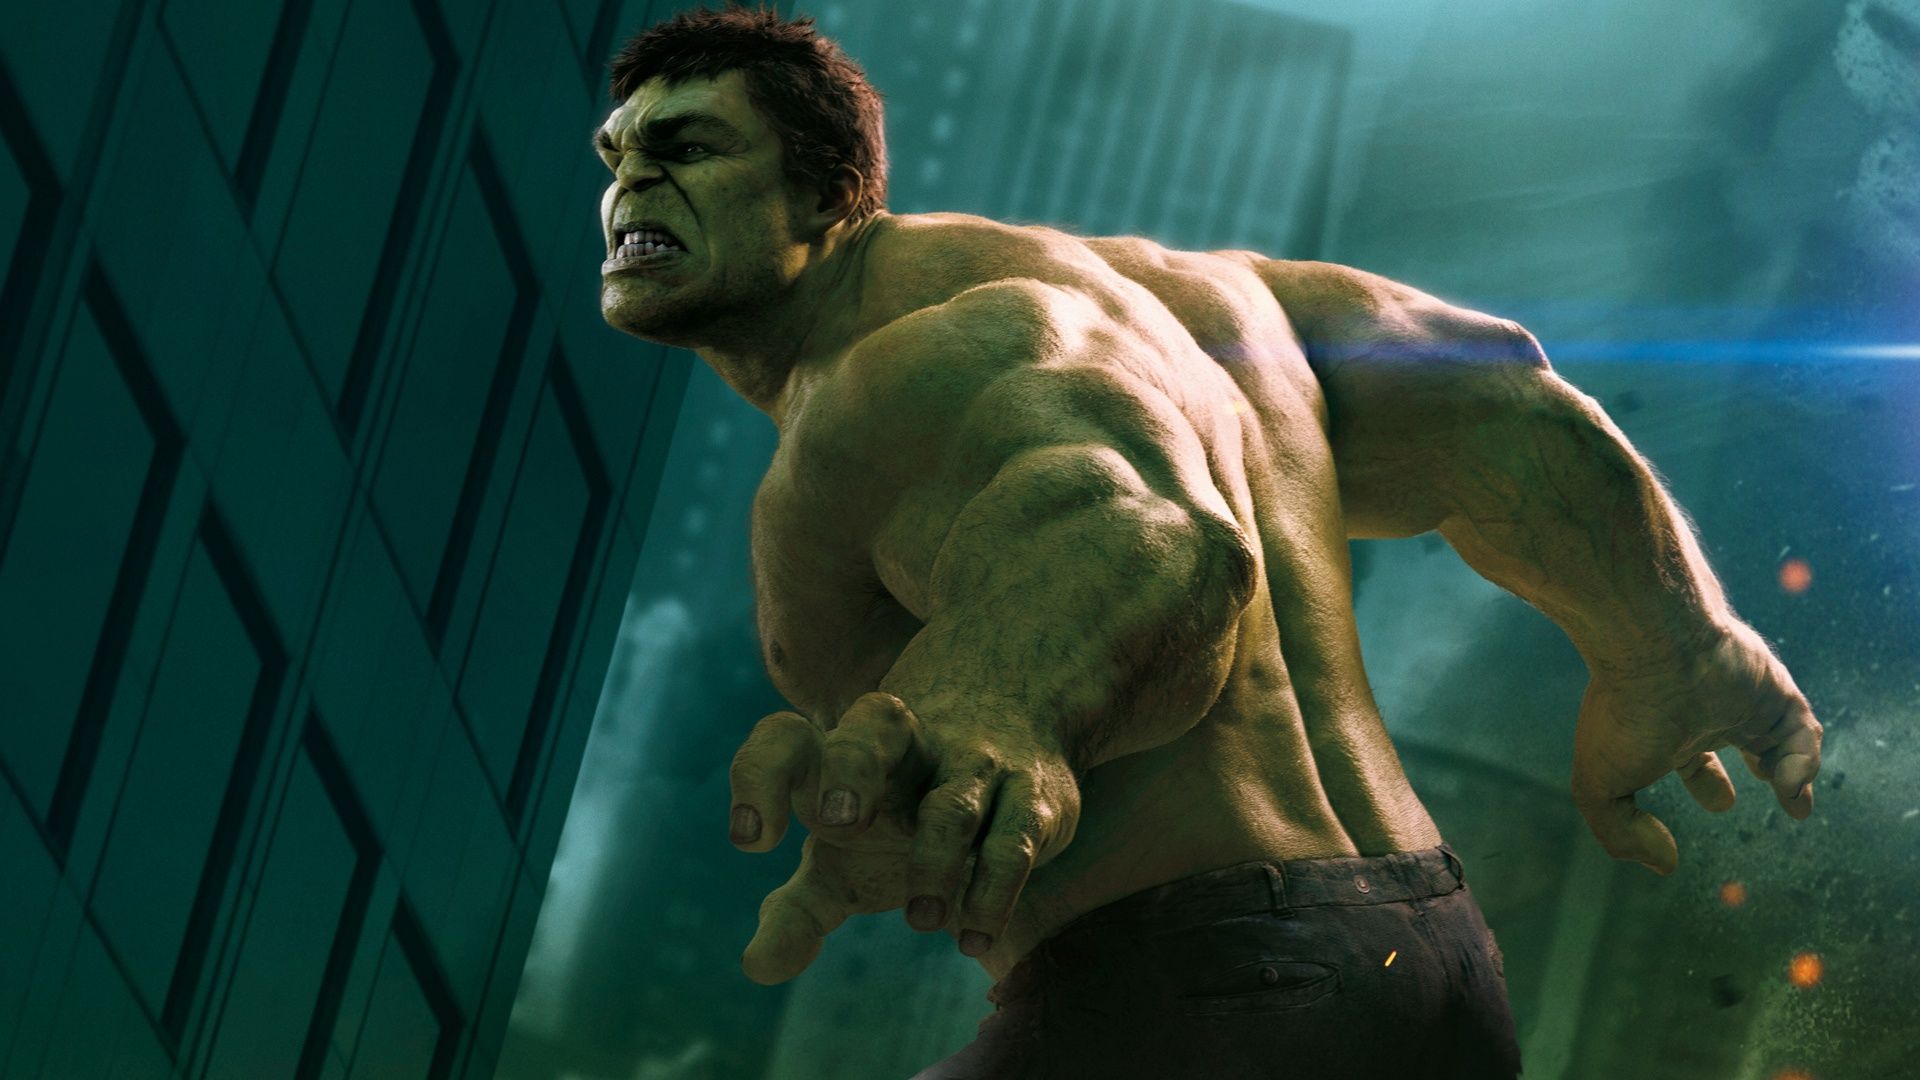 HD Wallpaper Widescreen 1080p 3d Hulk In The Avengers